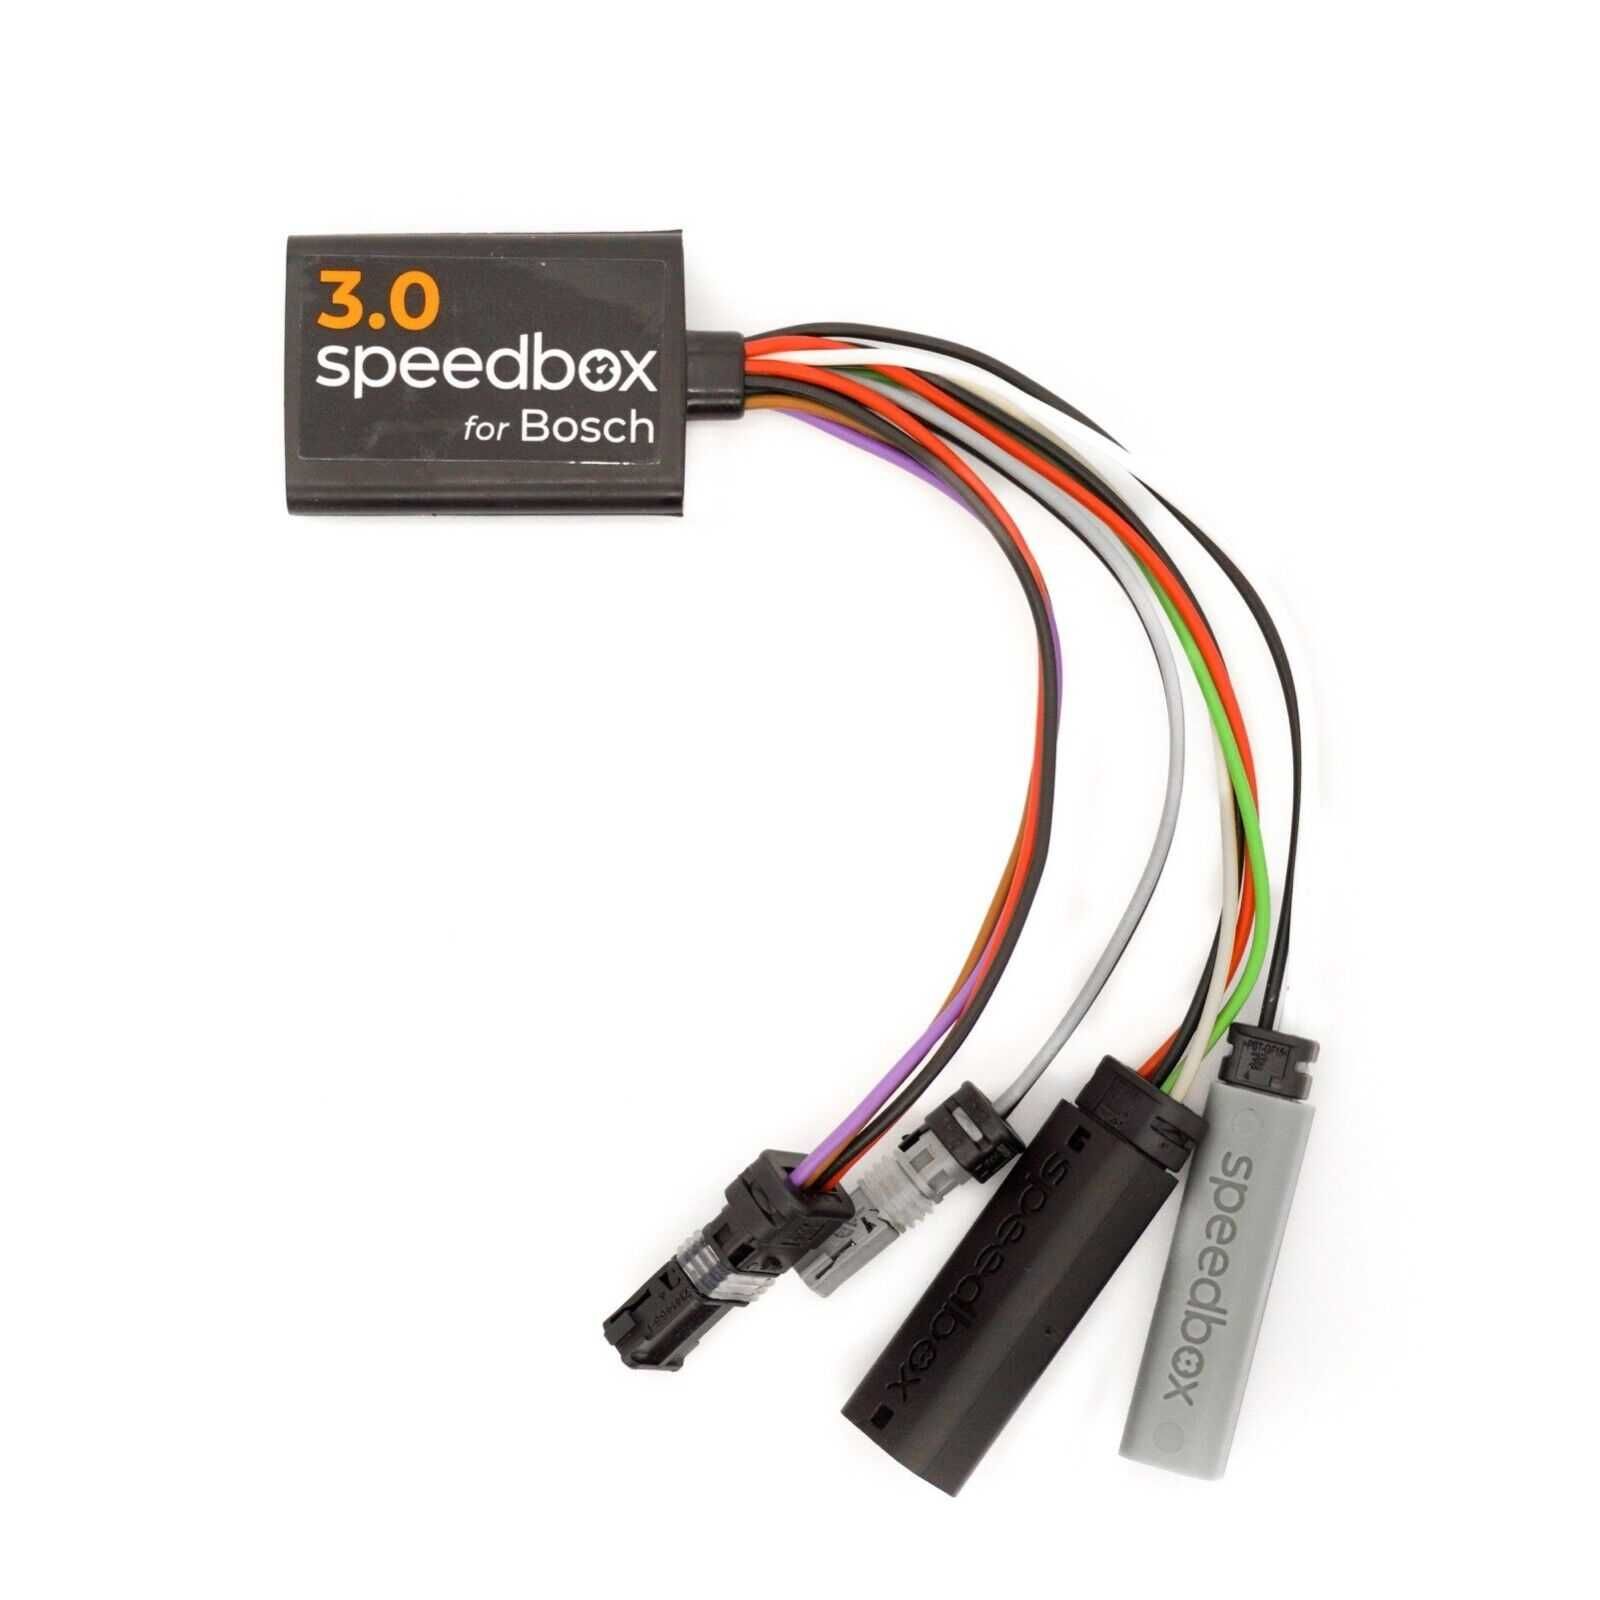 SpeedBox 3.0 Bosch Performance CX gen4 chip e-bike